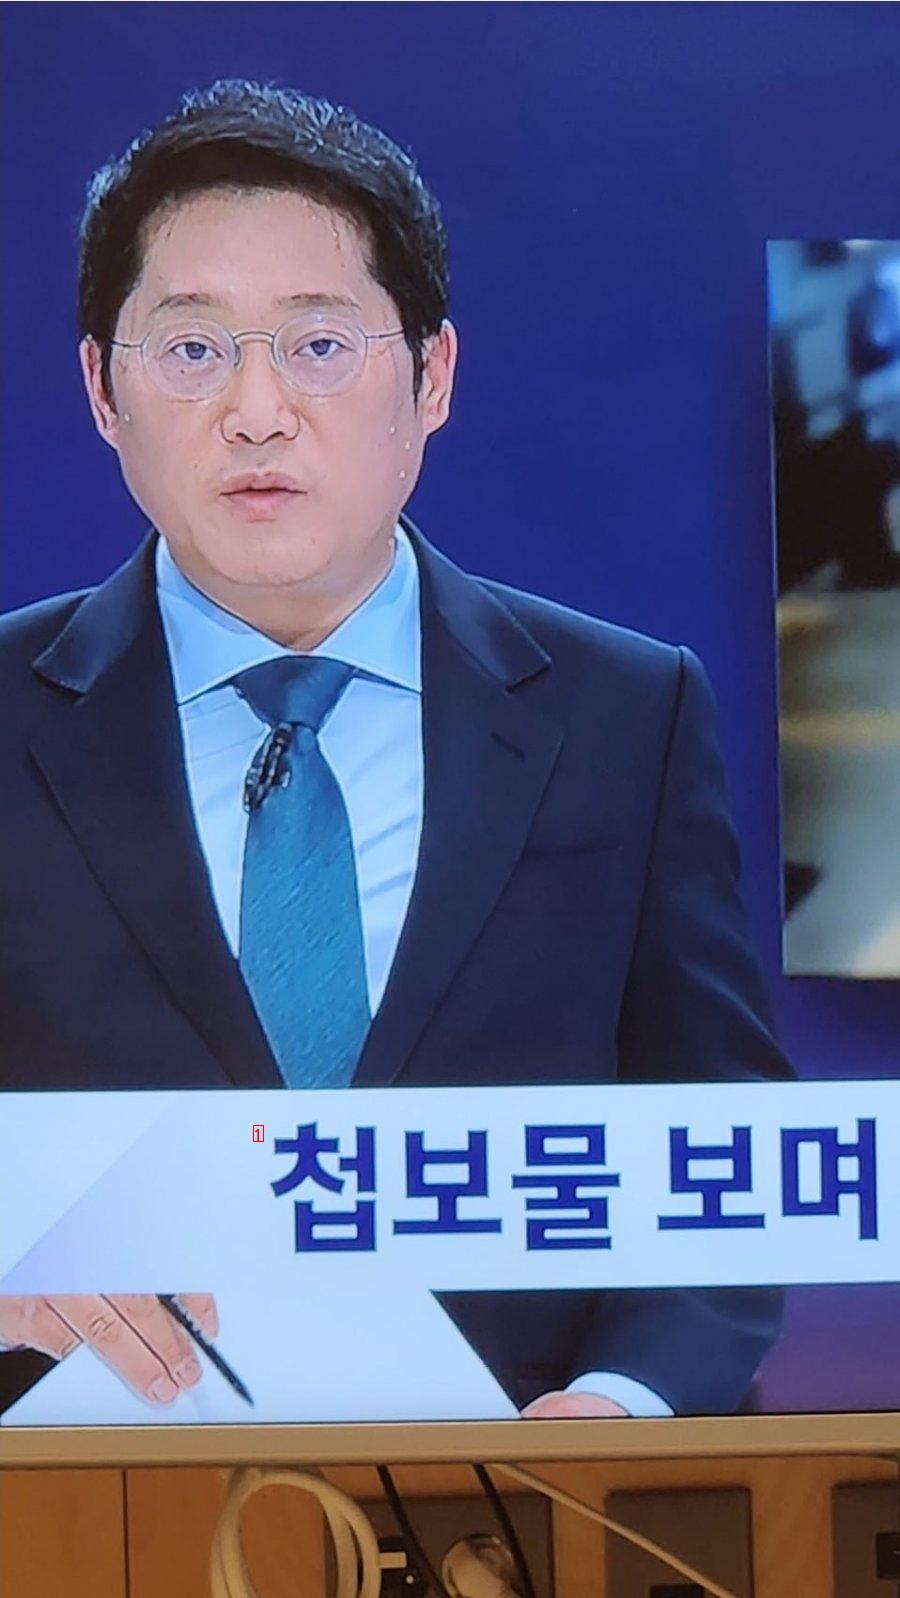 방송중 땀을 비오듯 흘리는 JTBC 앵커